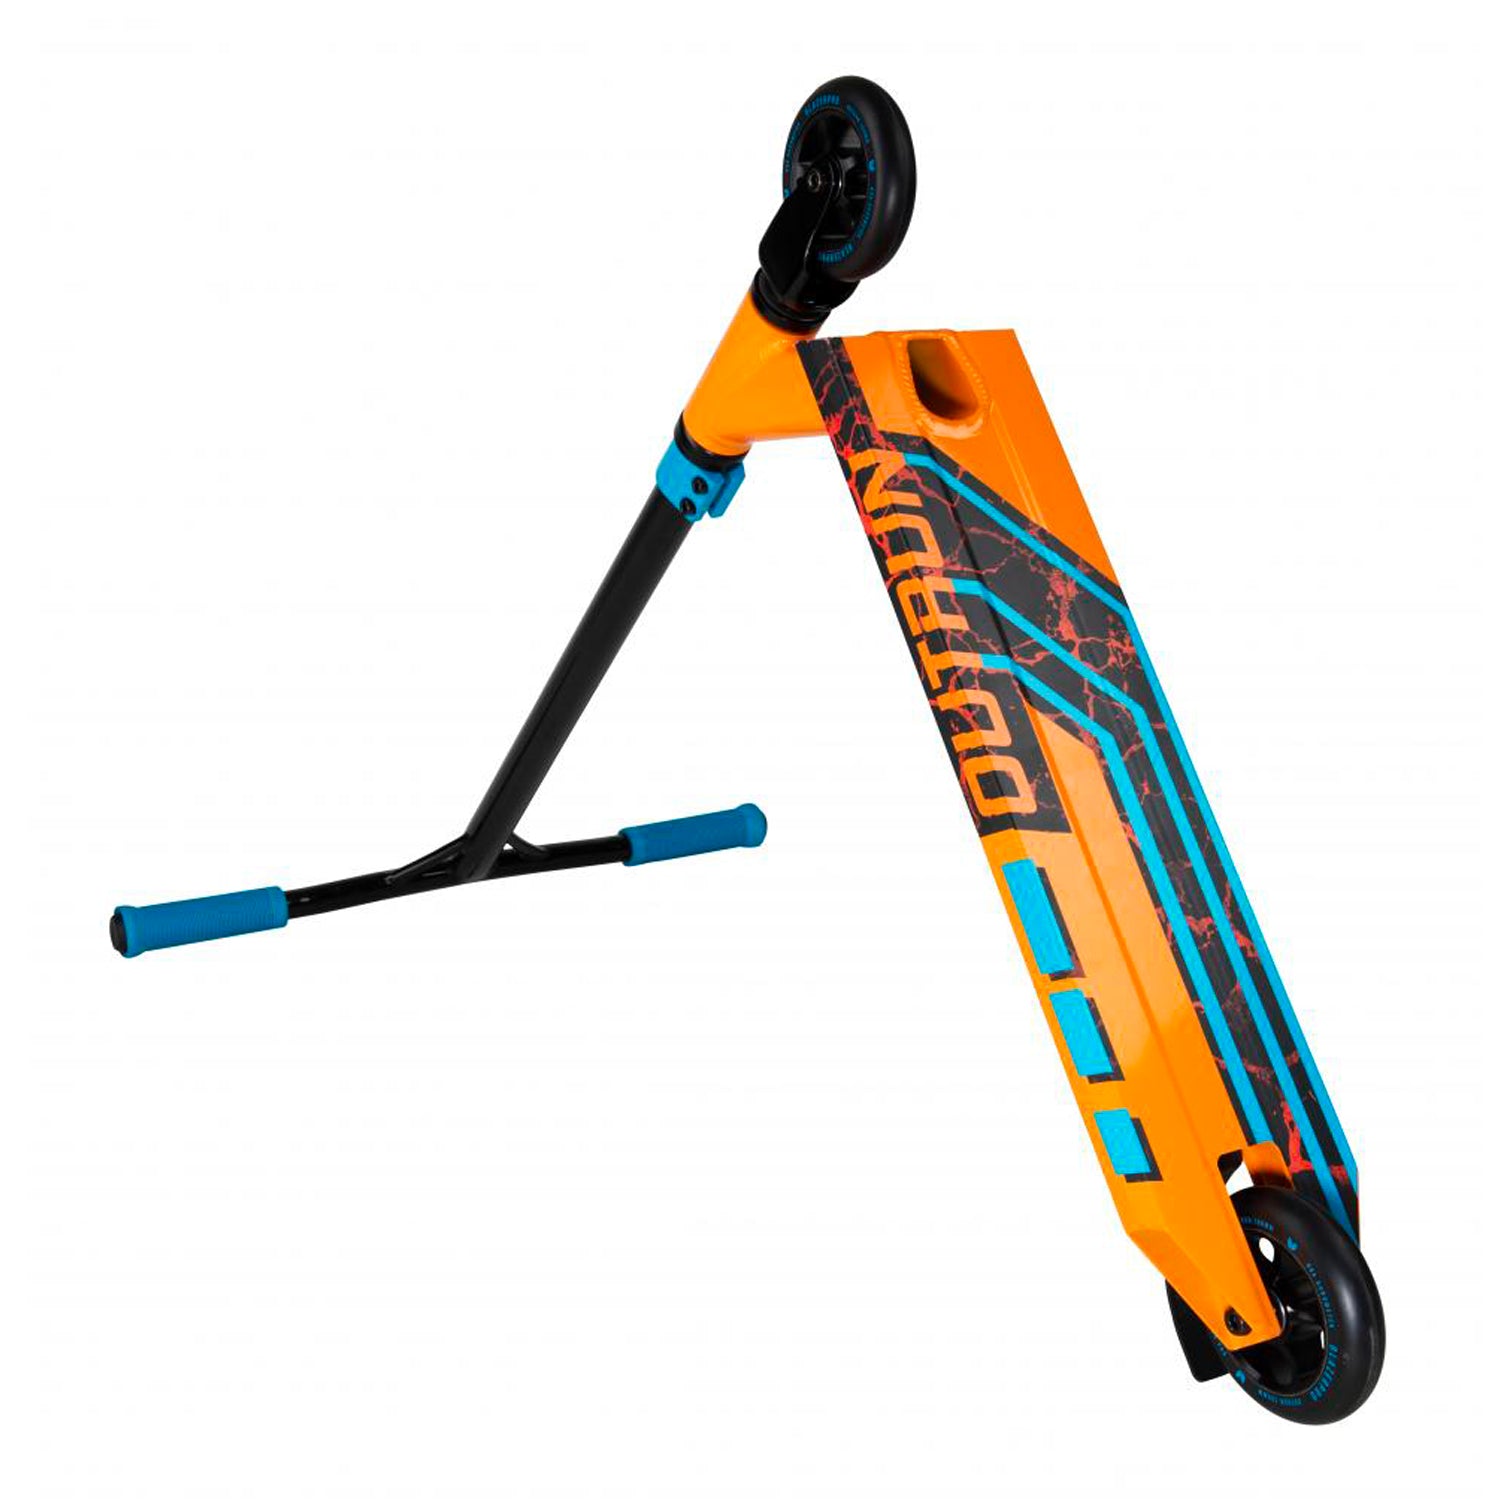 Blazer Pro Complete Outrun 2 FX - Lava Scooter - Orange - Prime Delux Store